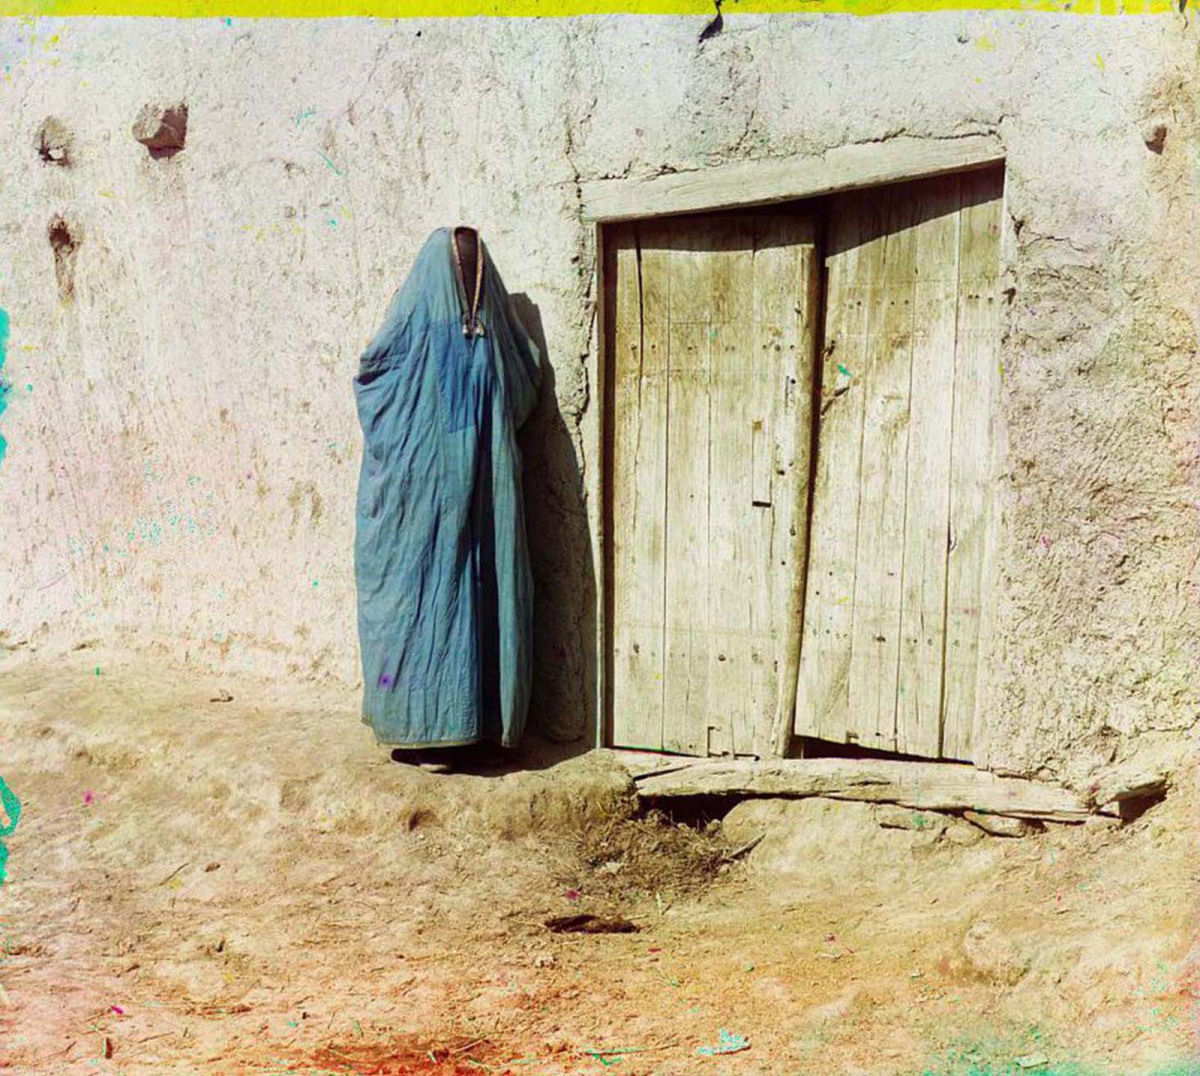 O Uzbequistão da era czarista capturado em raras fotos coloridas, entre 1907 e 1911 09